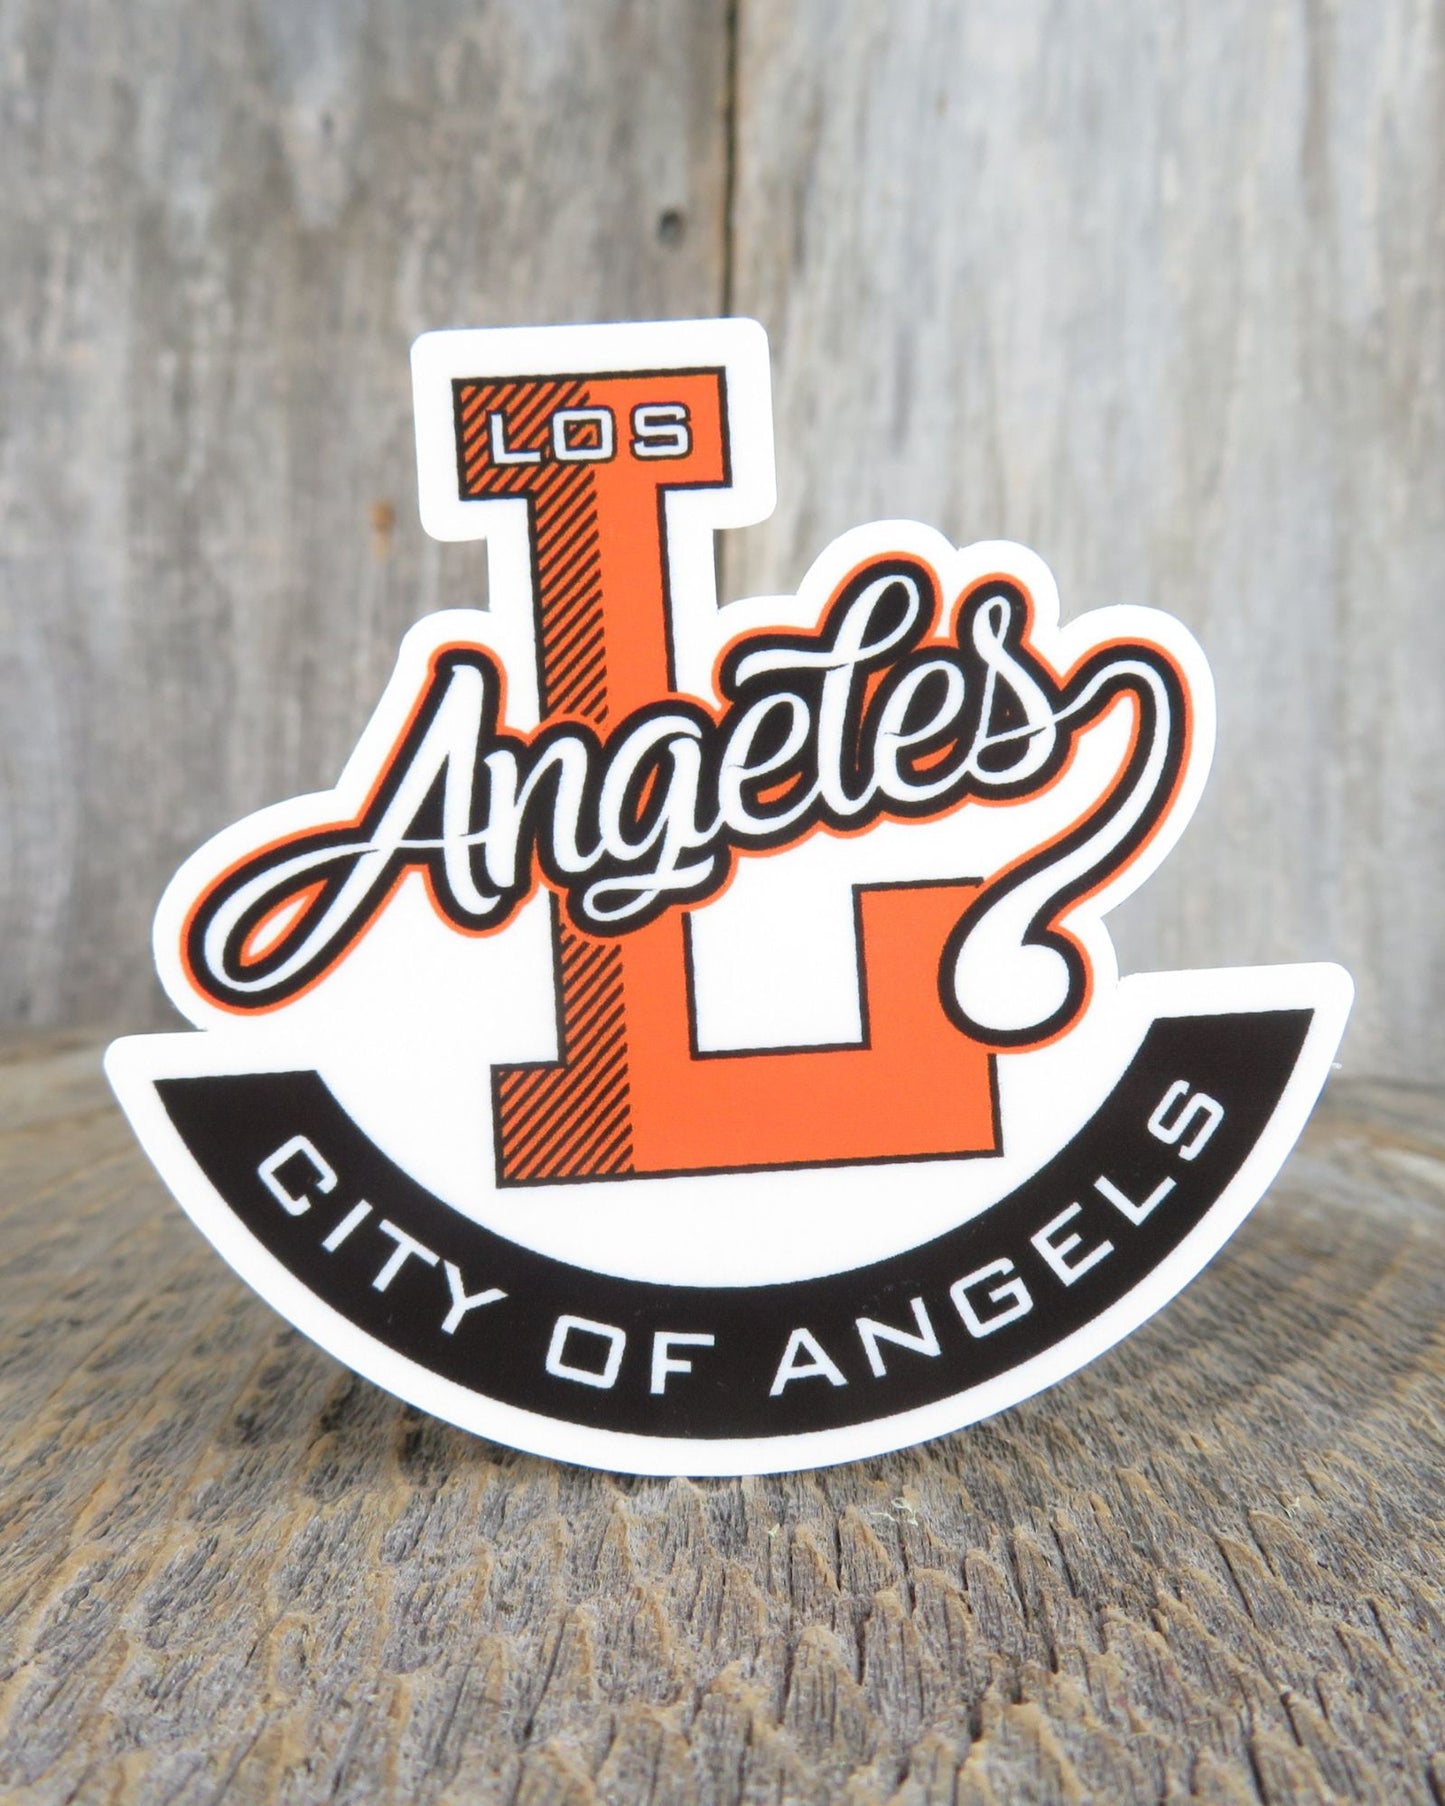 Los Angeles City of Angels Sticker California Orange Black Waterproof Travel Souvenir Hometown Pride